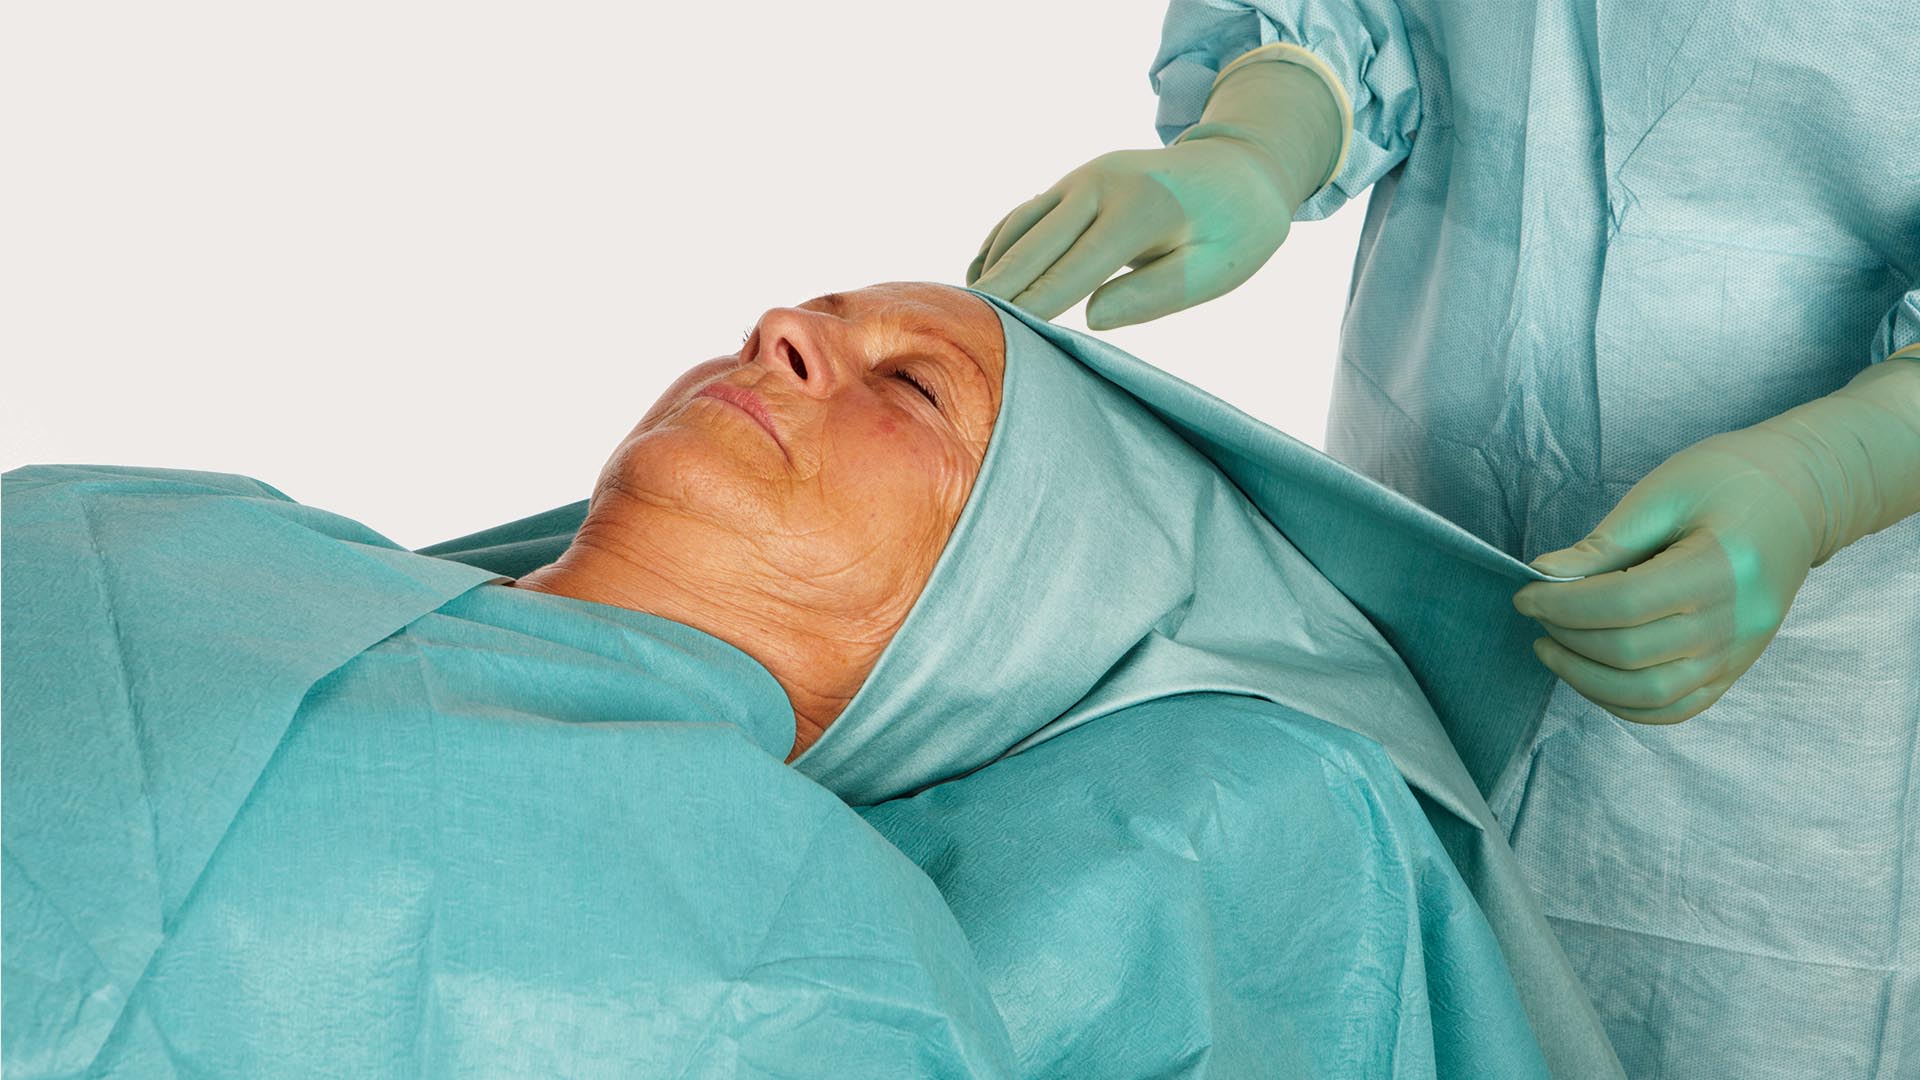 Hlava pacientky zarouškovaná pomocí ORL roušky BARRIER